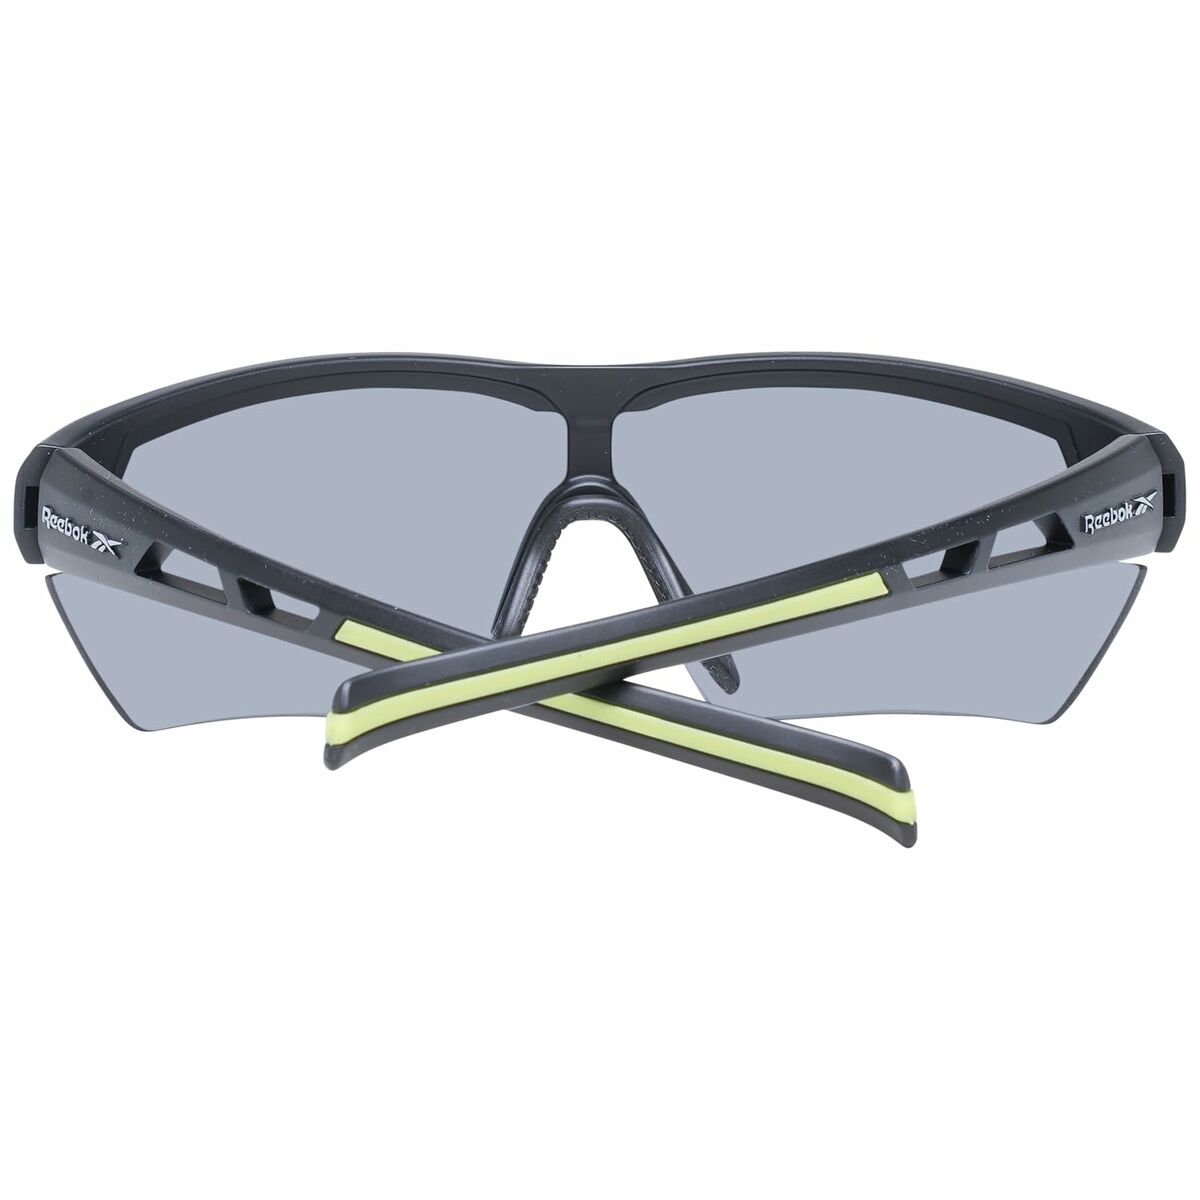 Unisex-Sonnenbrille Reebok RV9330 13301